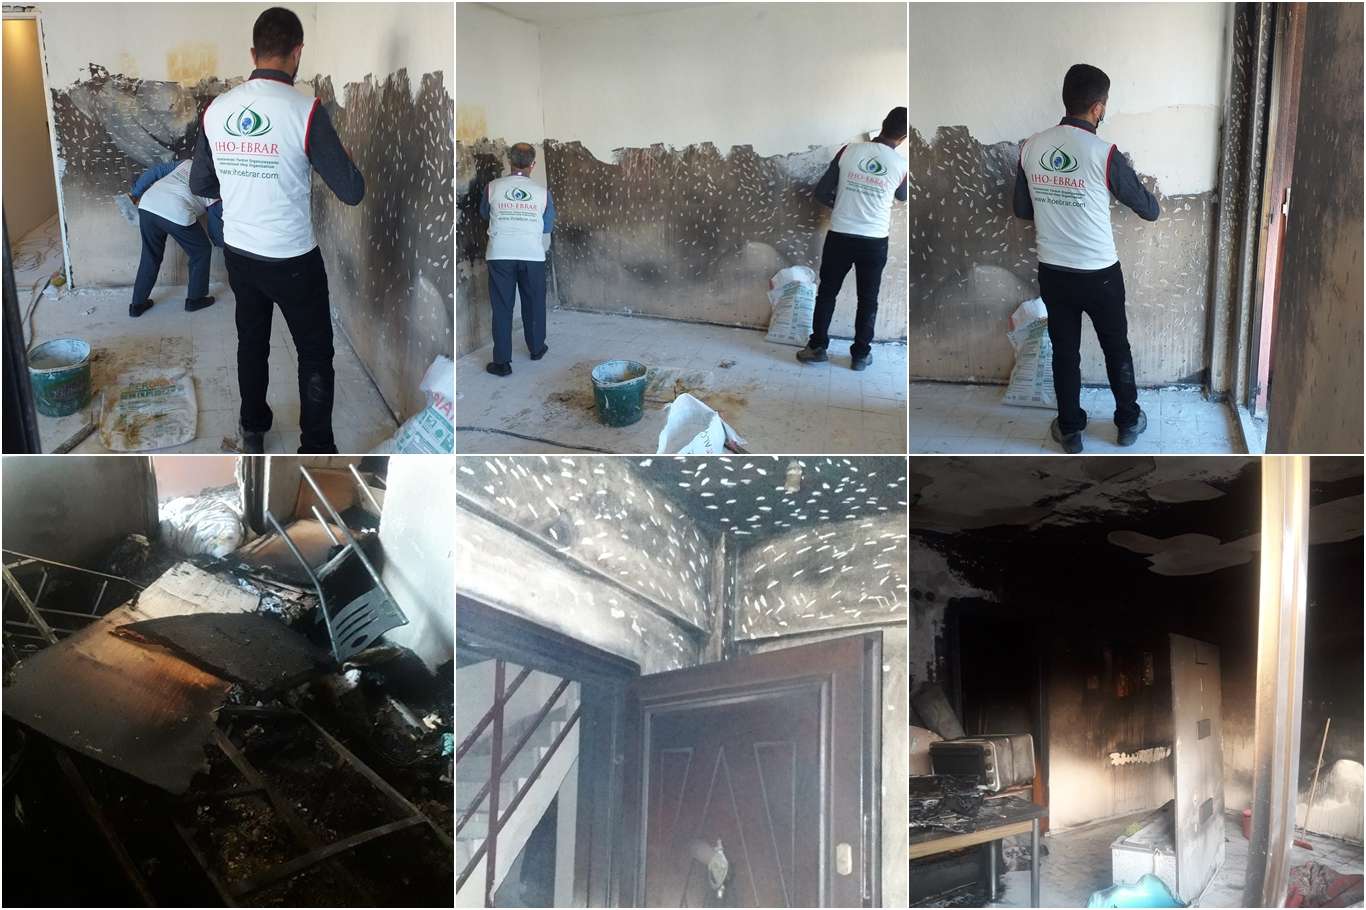 IHO Ebrar evi yanan çaresiz ailenin evini onardı